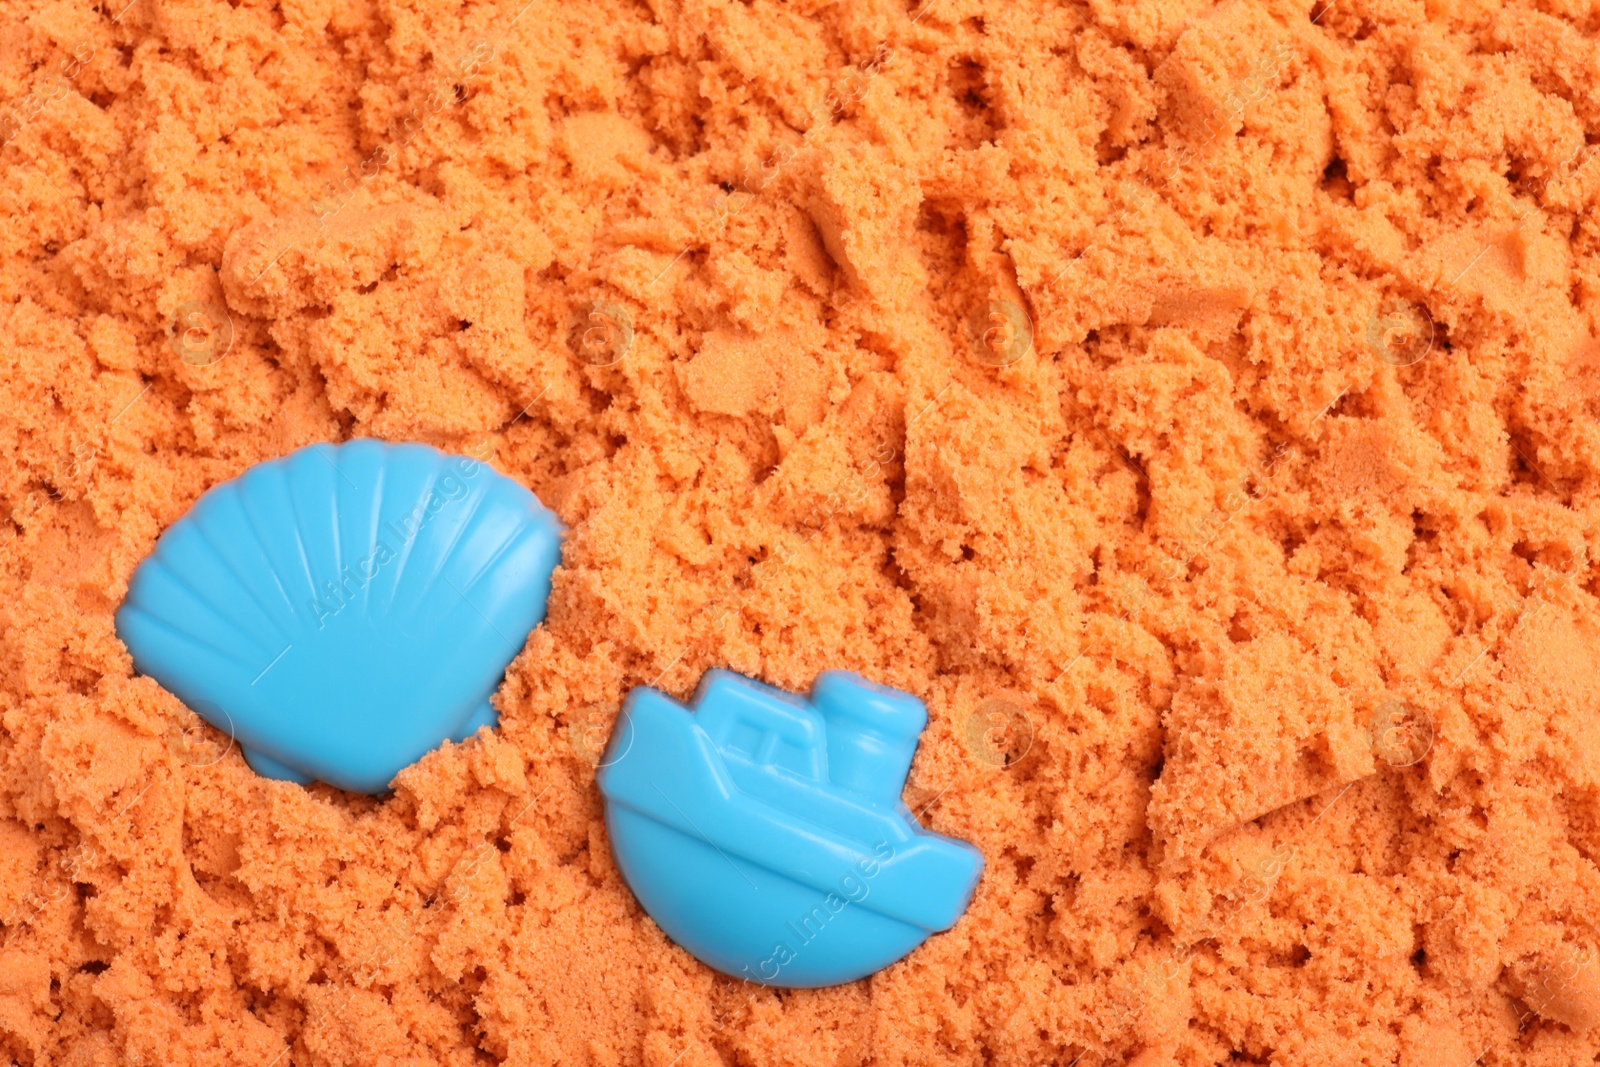 Photo of Toys on orange kinetic sand, flat lay